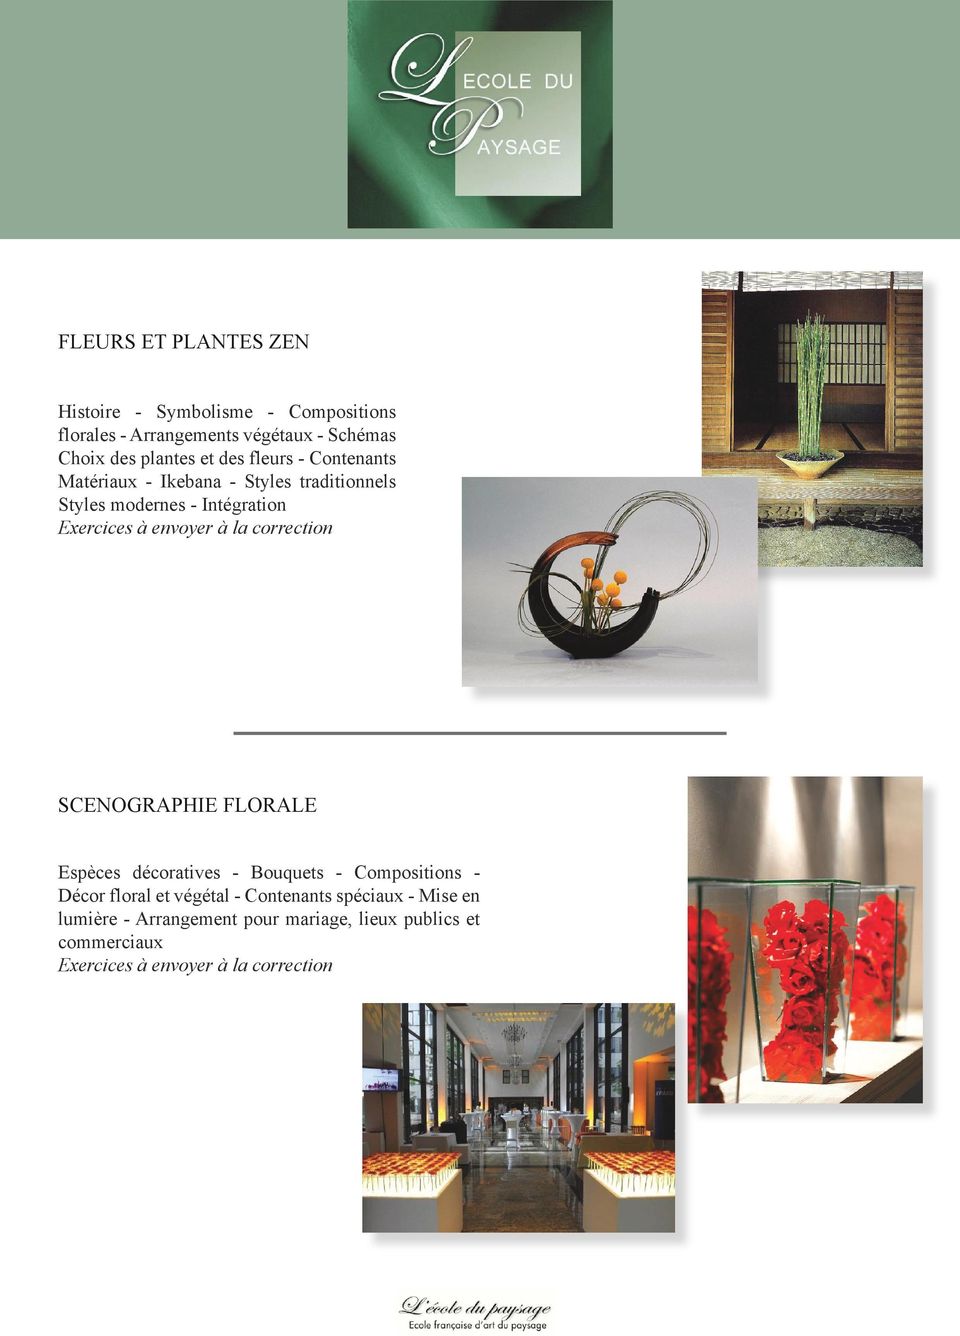 modernes - Intégration SCENOGRAPHIE FLORALE Espèces décoratives - Bouquets - Compositions - Décor